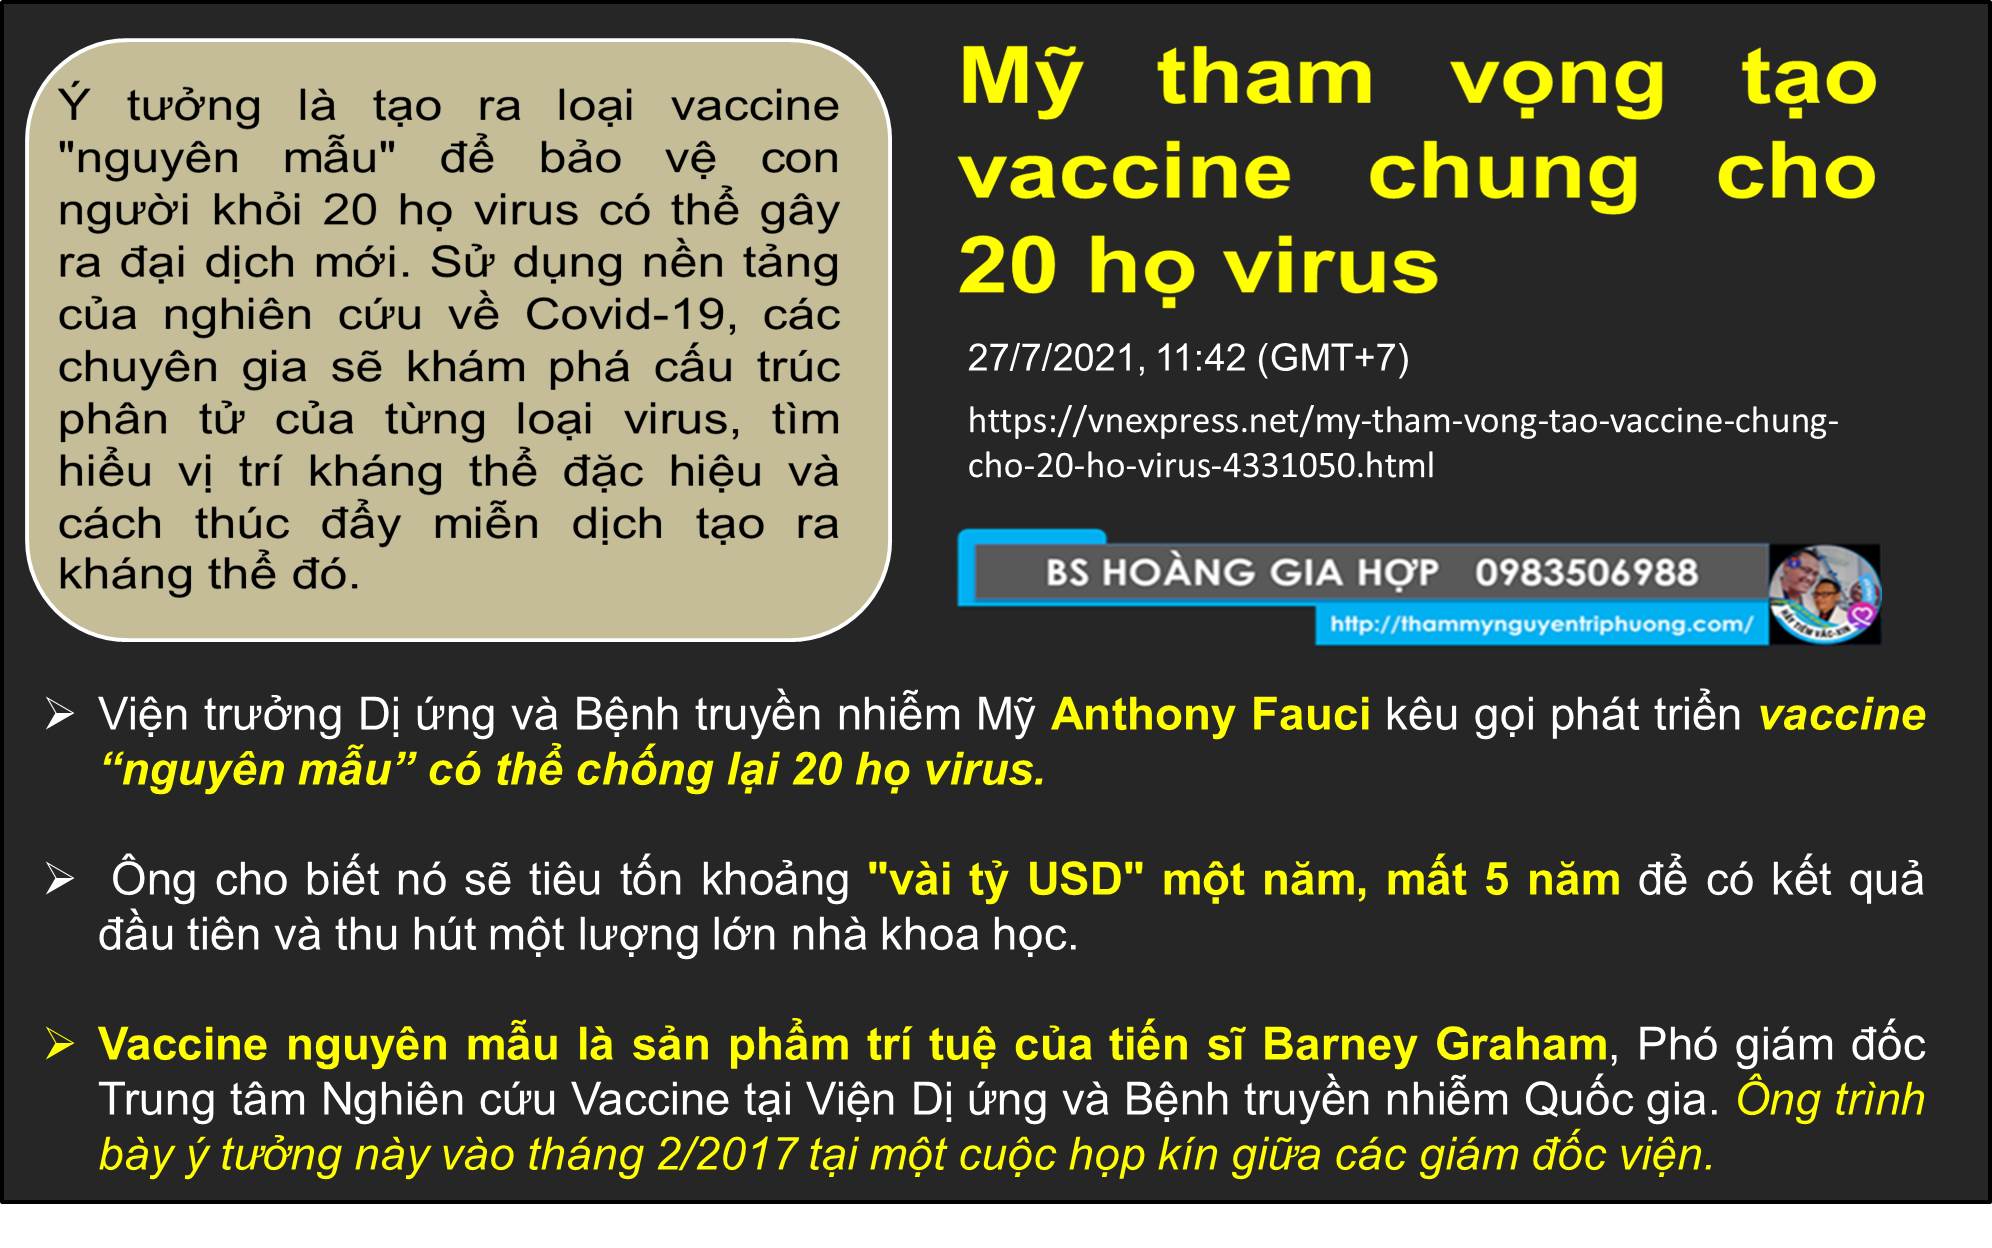 VACCINE “nguyên mẫu” có thể chống lại 20 họ virus.